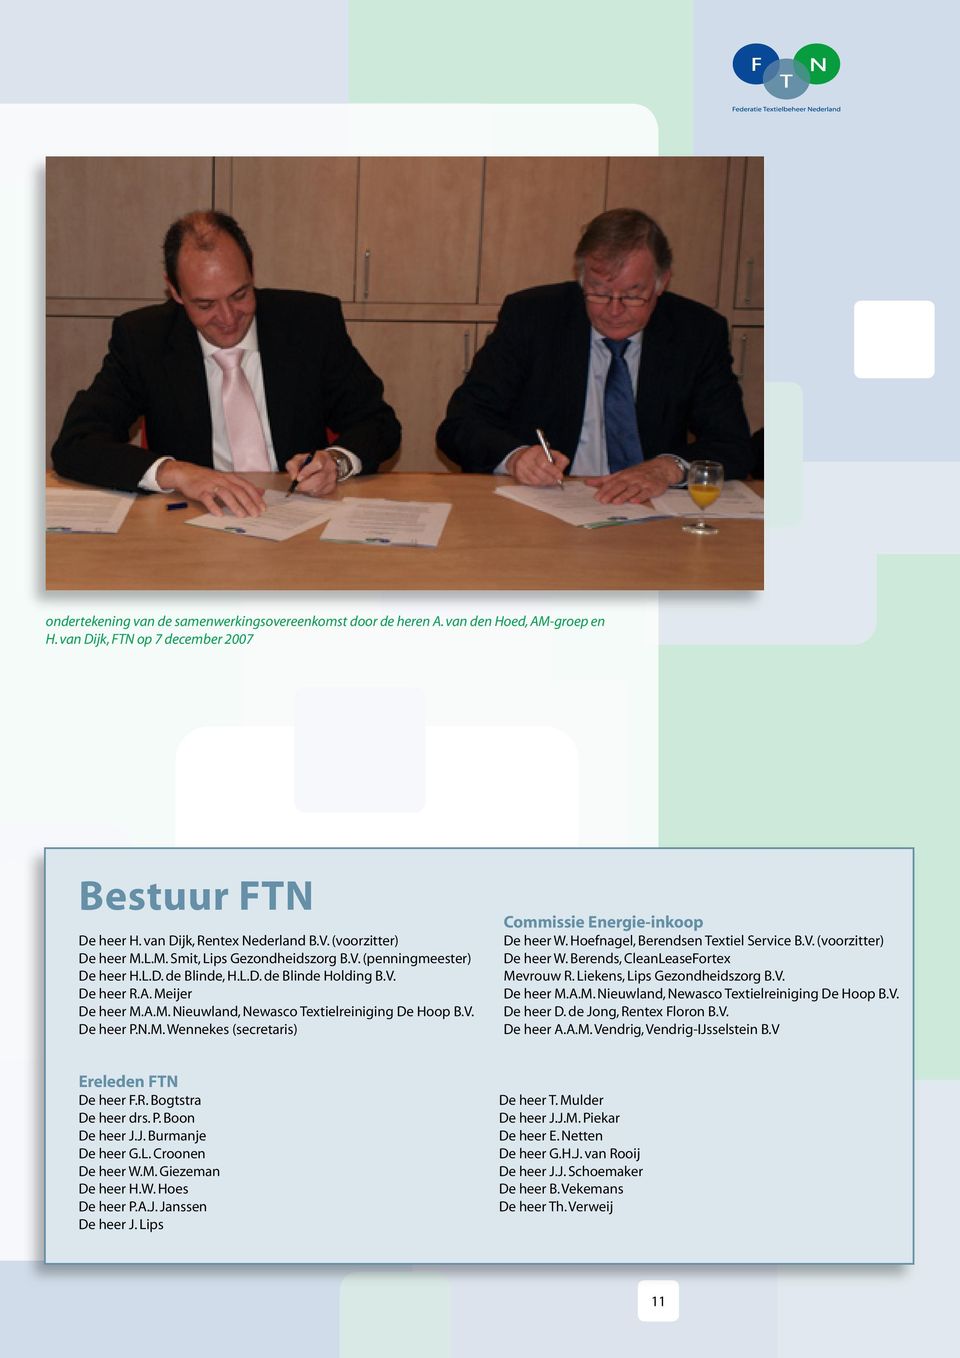 V. De heer P.N.M. Wennekes (secretaris) Commissie Energie-inkoop De heer W. Hoefnagel, Berendsen Textiel Service B.V. (voorzitter) De heer W. Berends, CleanLeaseFortex Mevrouw R.